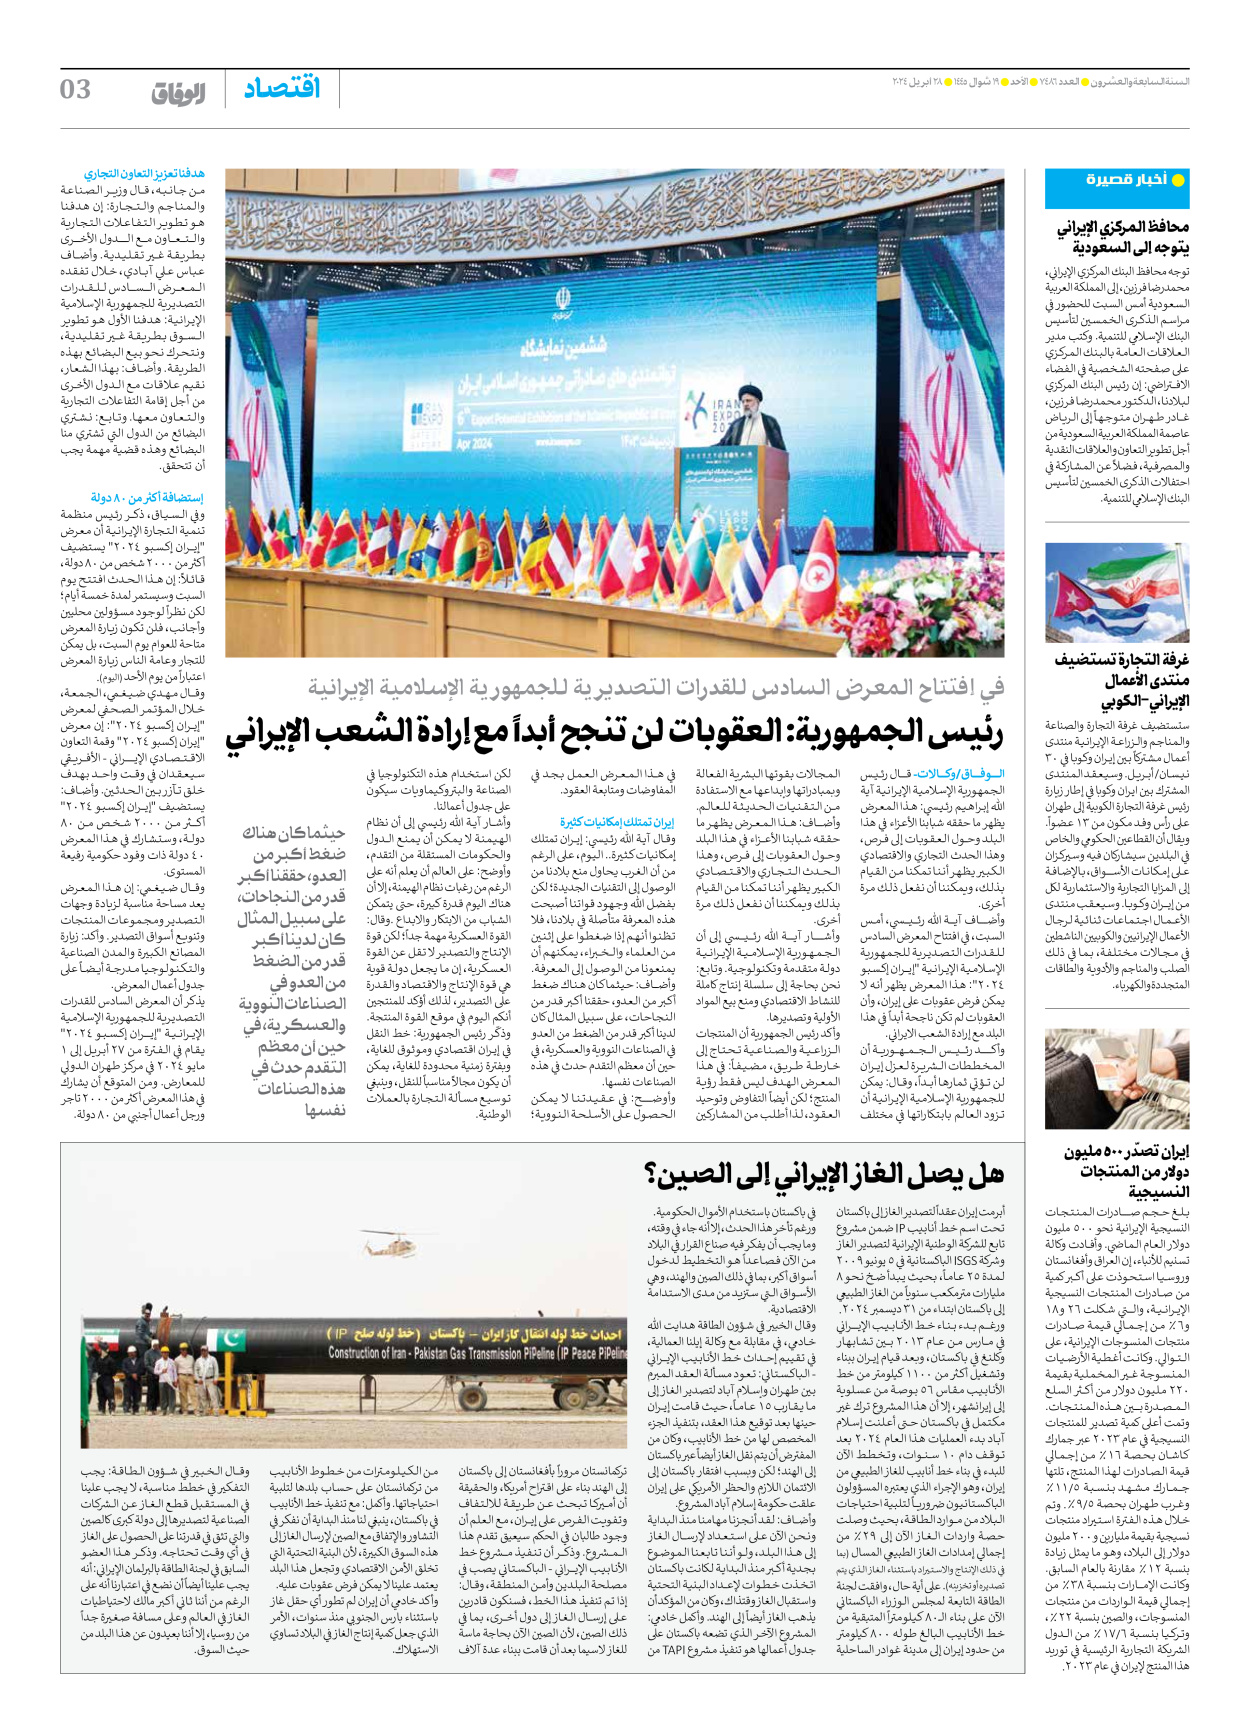 صحیفة ایران الدولیة الوفاق - العدد سبعة آلاف وأربعمائة وستة وثمانون - ٢٨ أبريل ٢٠٢٤ - الصفحة ۳